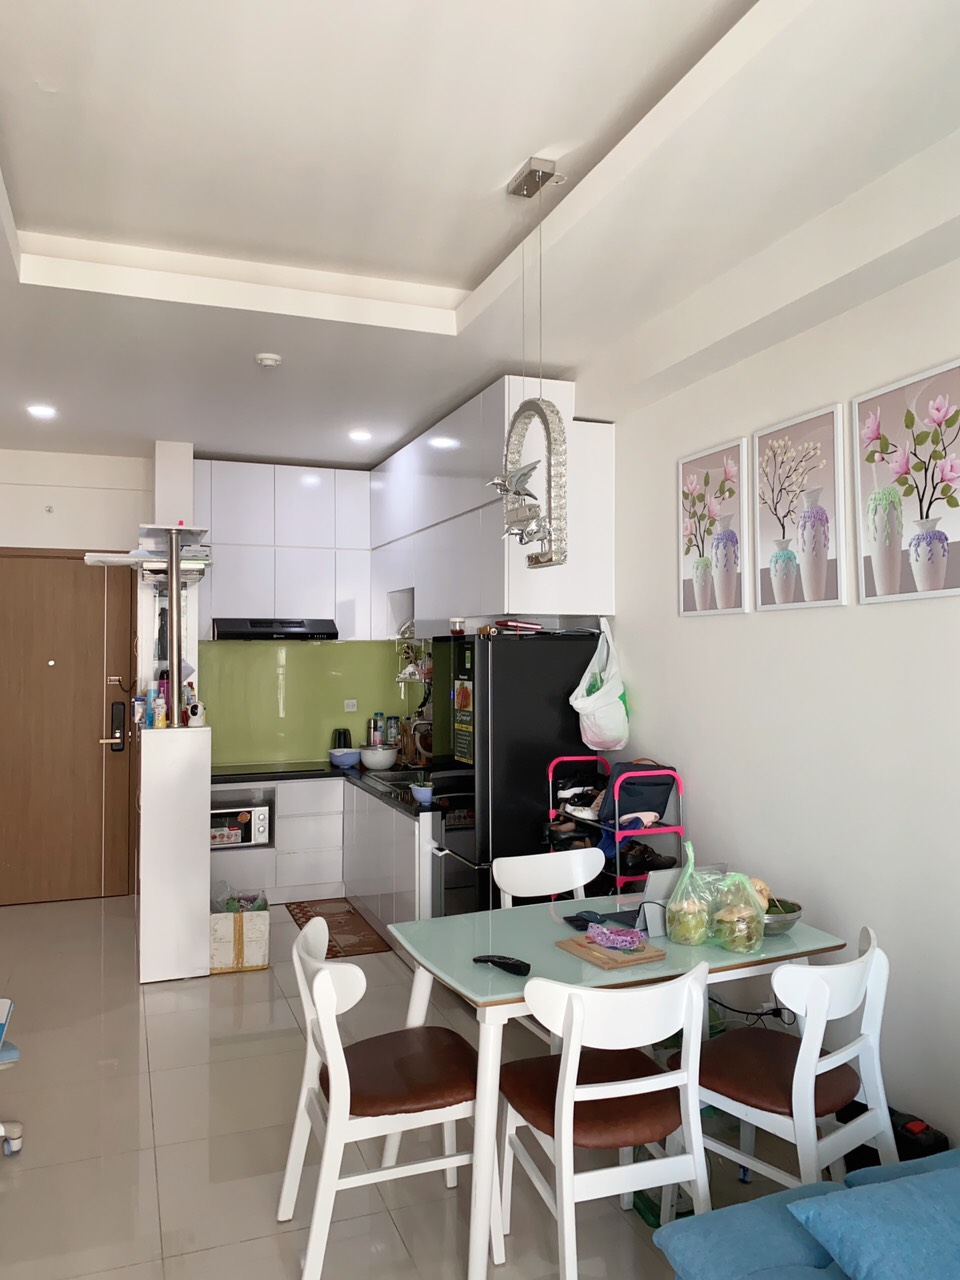 Cho thuê gấp căn hộ Richstar Tân Phú giá 11tr/tháng cực rẻ, DT 65m2 2PN Full nội thất cao cấp